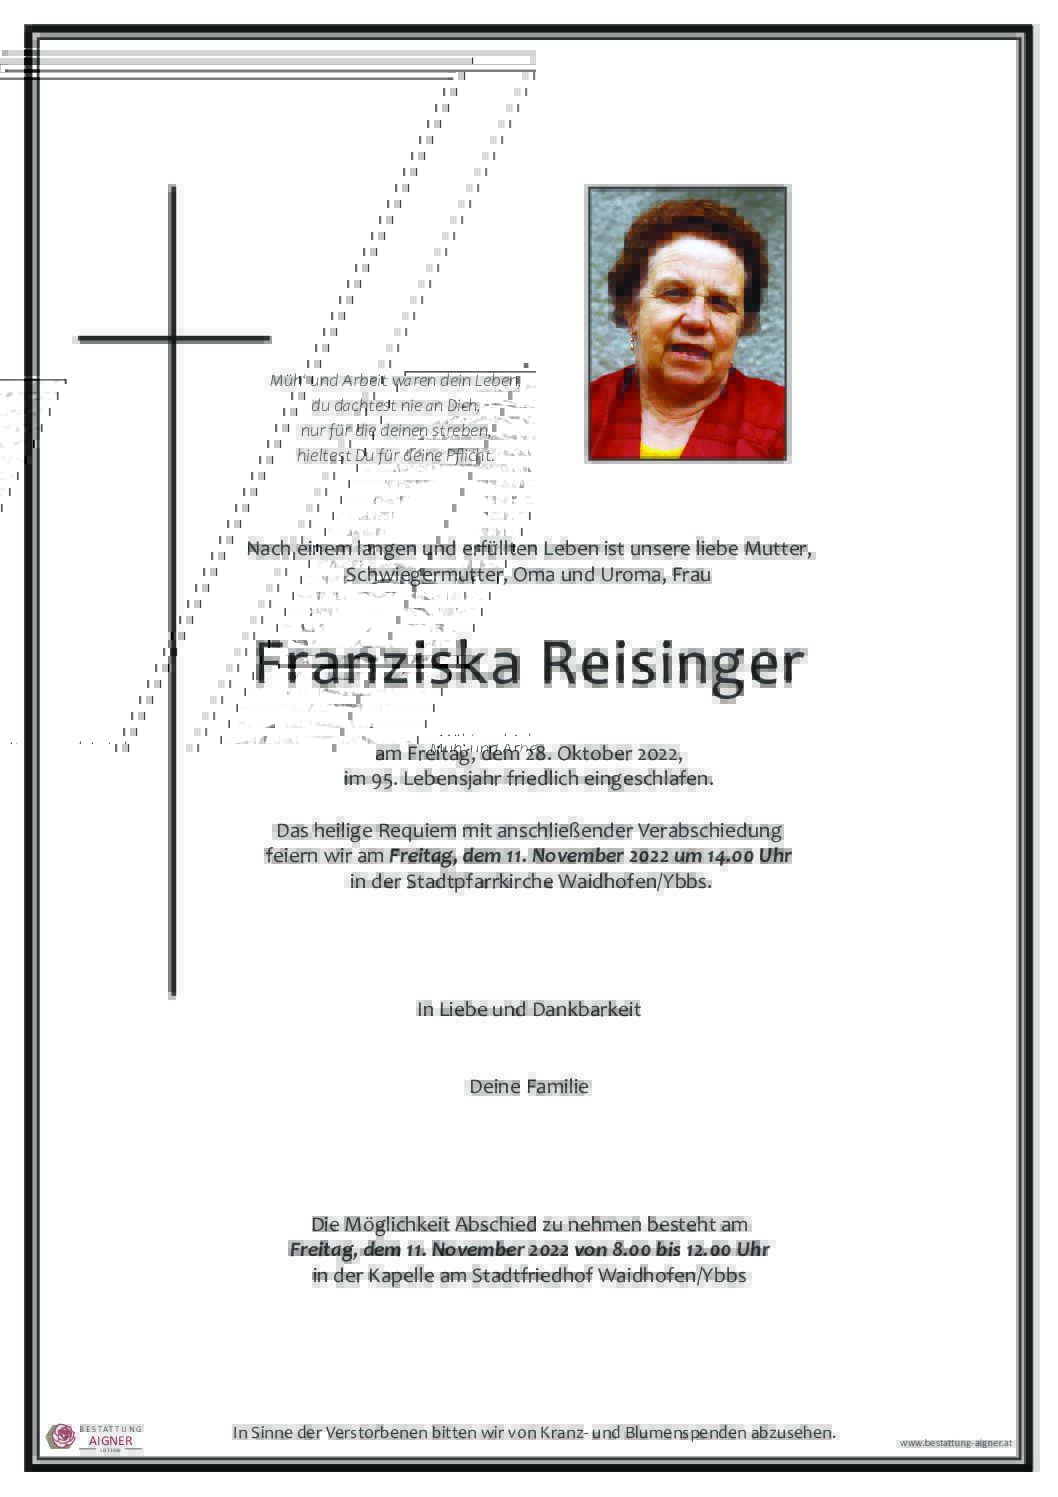 Franziska Reisinger